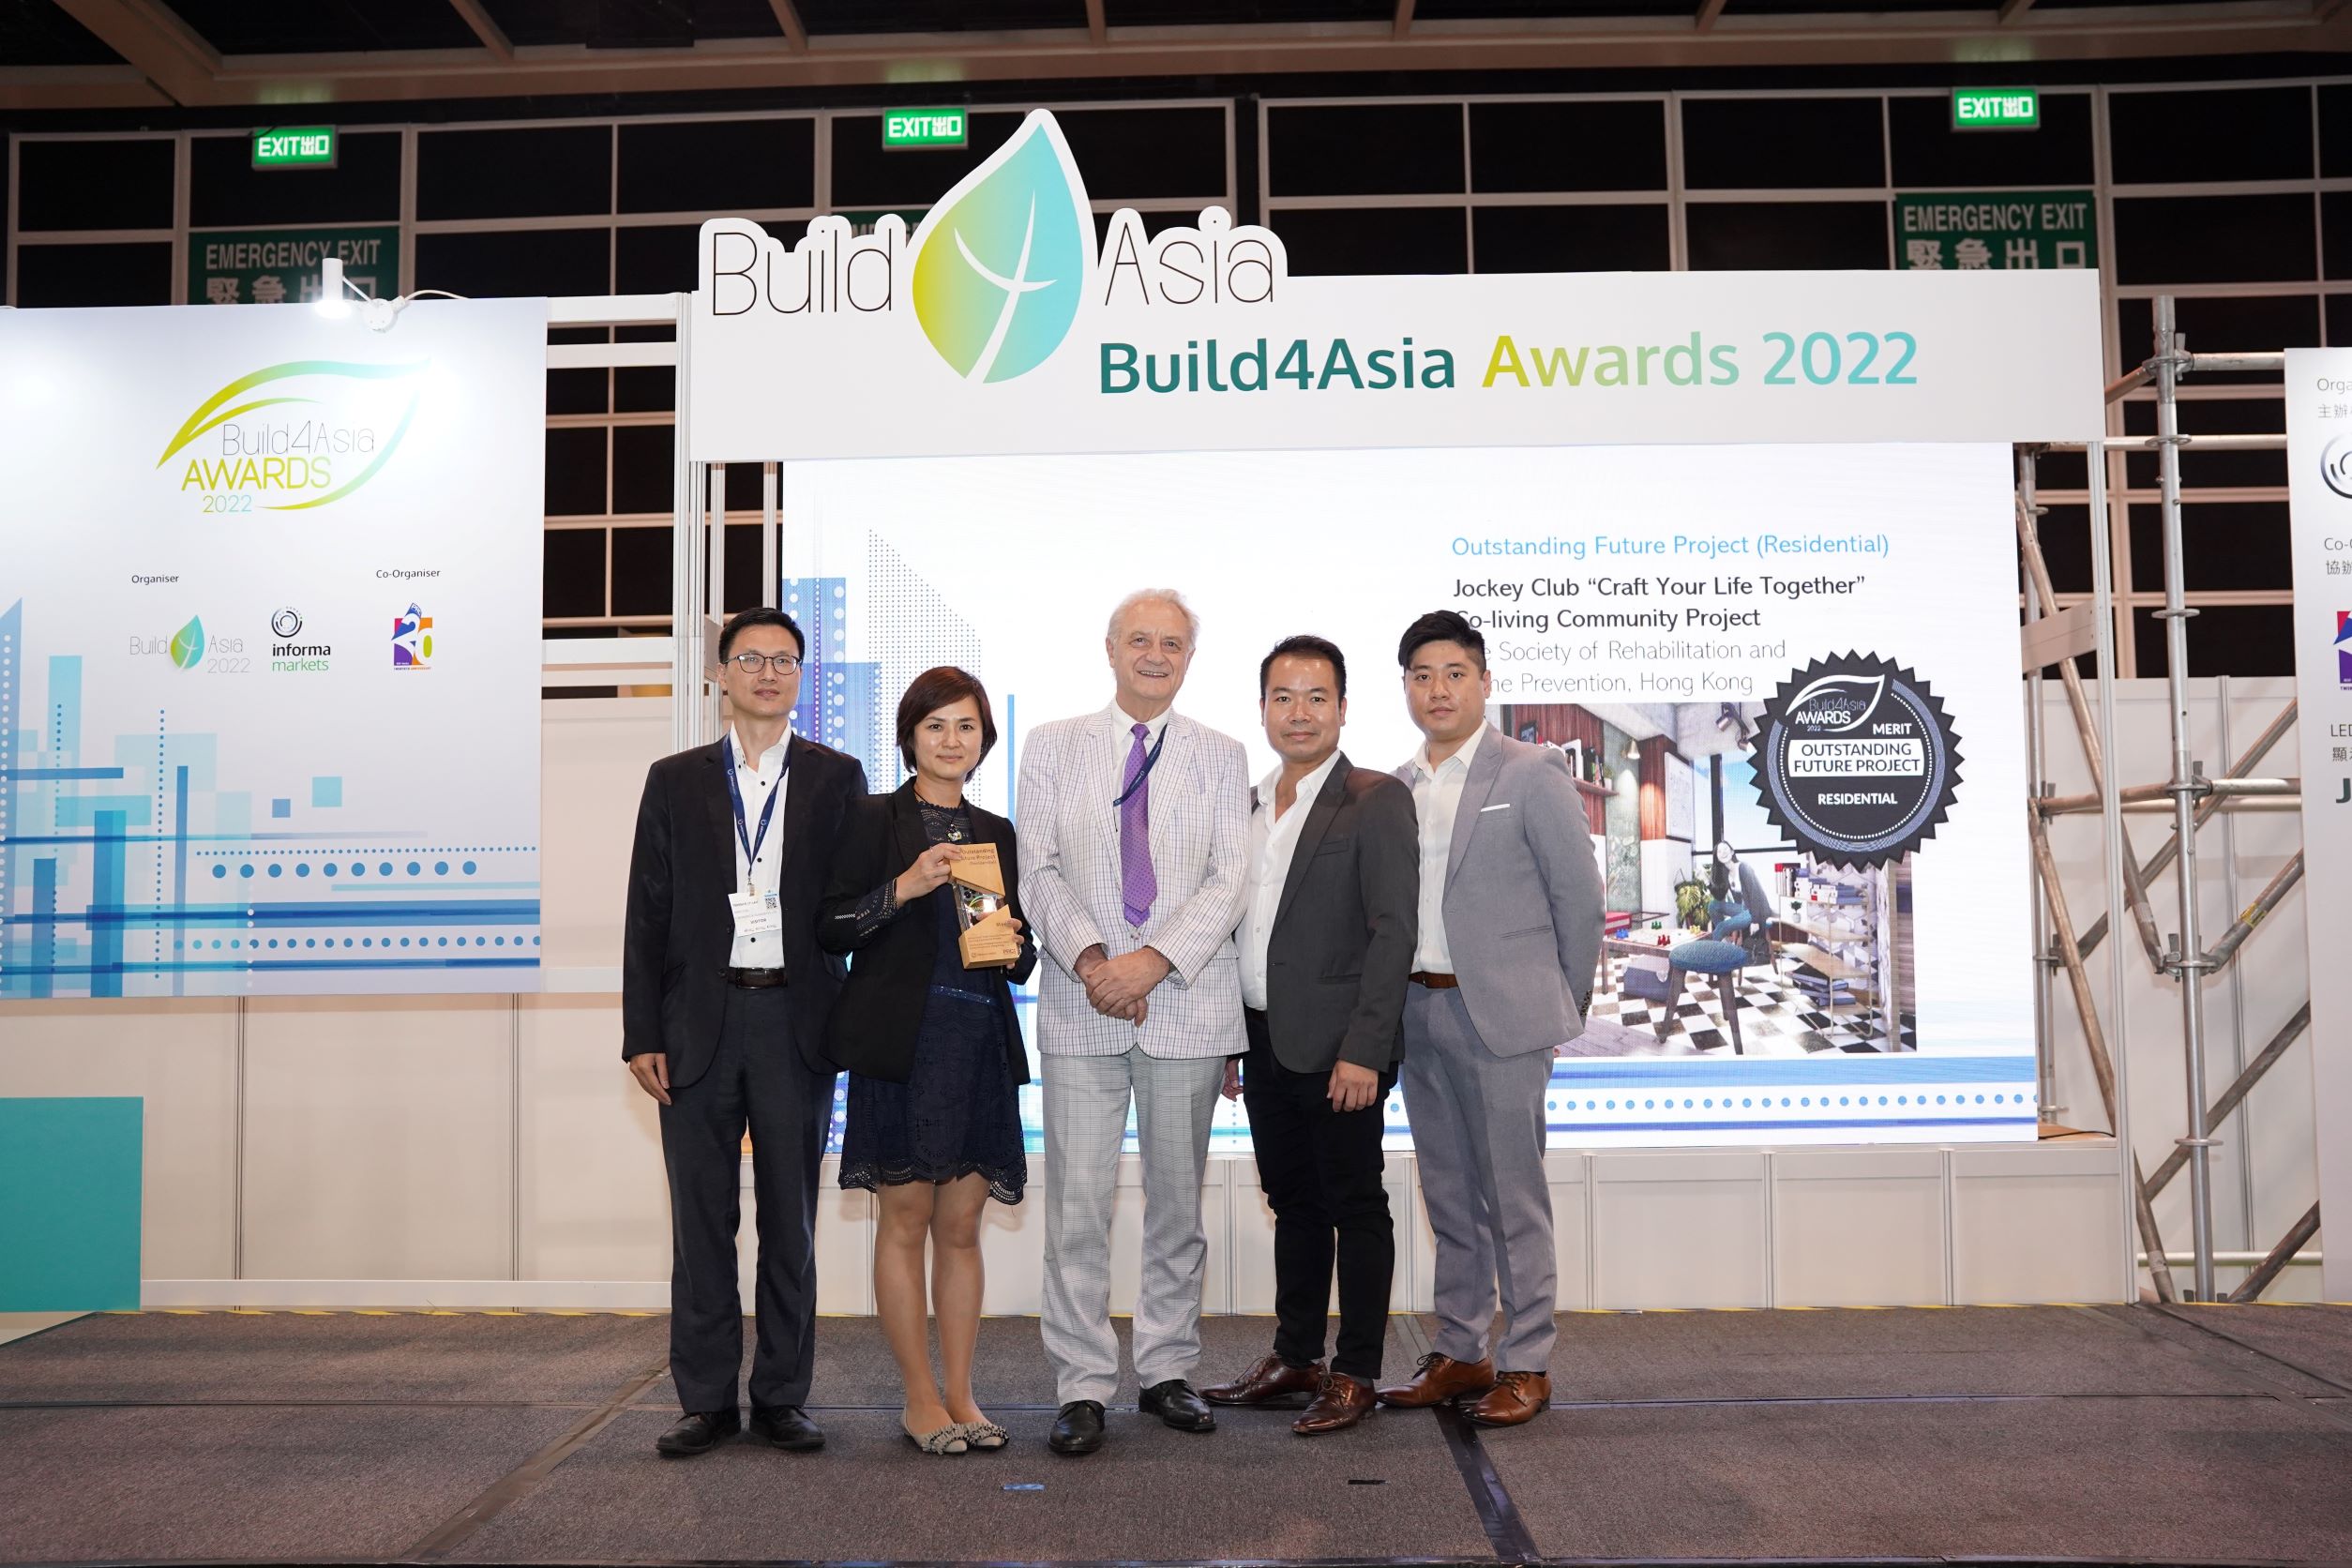 賽馬會「拍住上」共居社區計劃榮獲Build4Asia Awards 2022年度 Outstanding Future Project (Residential) 優異獎